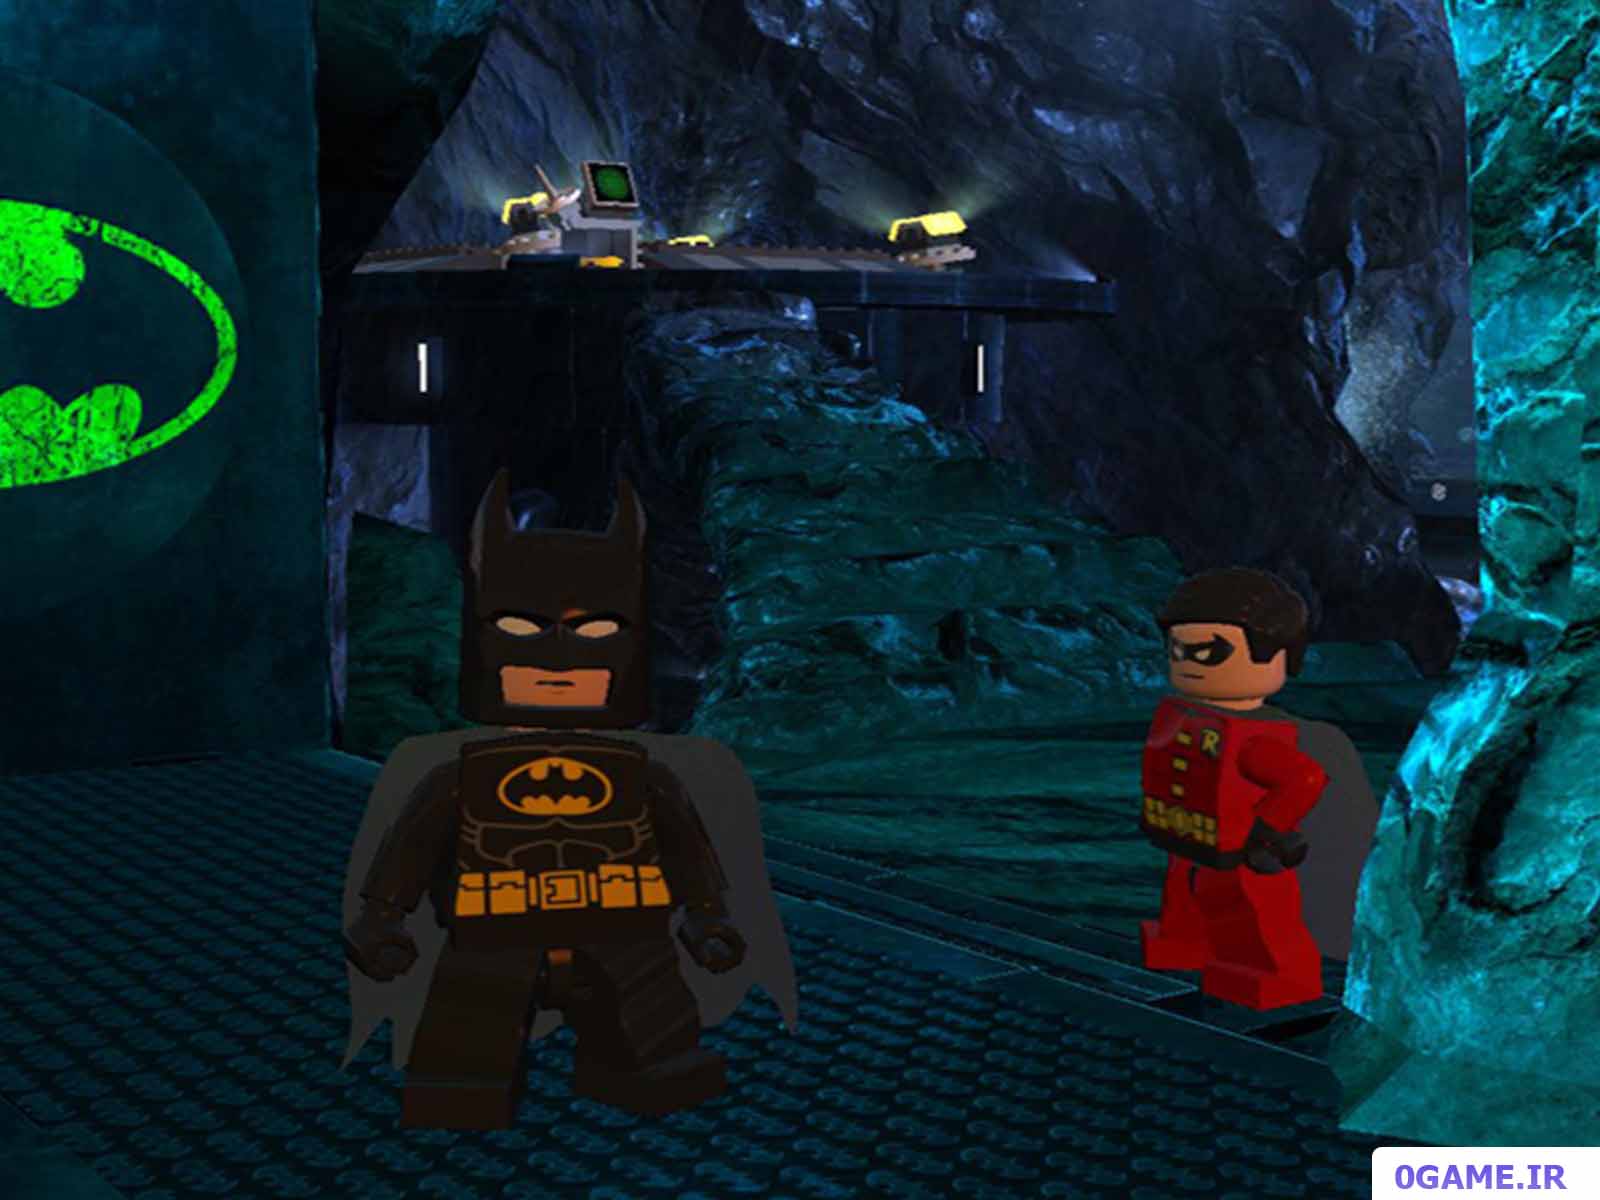 دانلود بازی لگو بتمن 2 (LEGO Batman 2: DC Super Heroes) نسخه کامل برای کامپیوتر